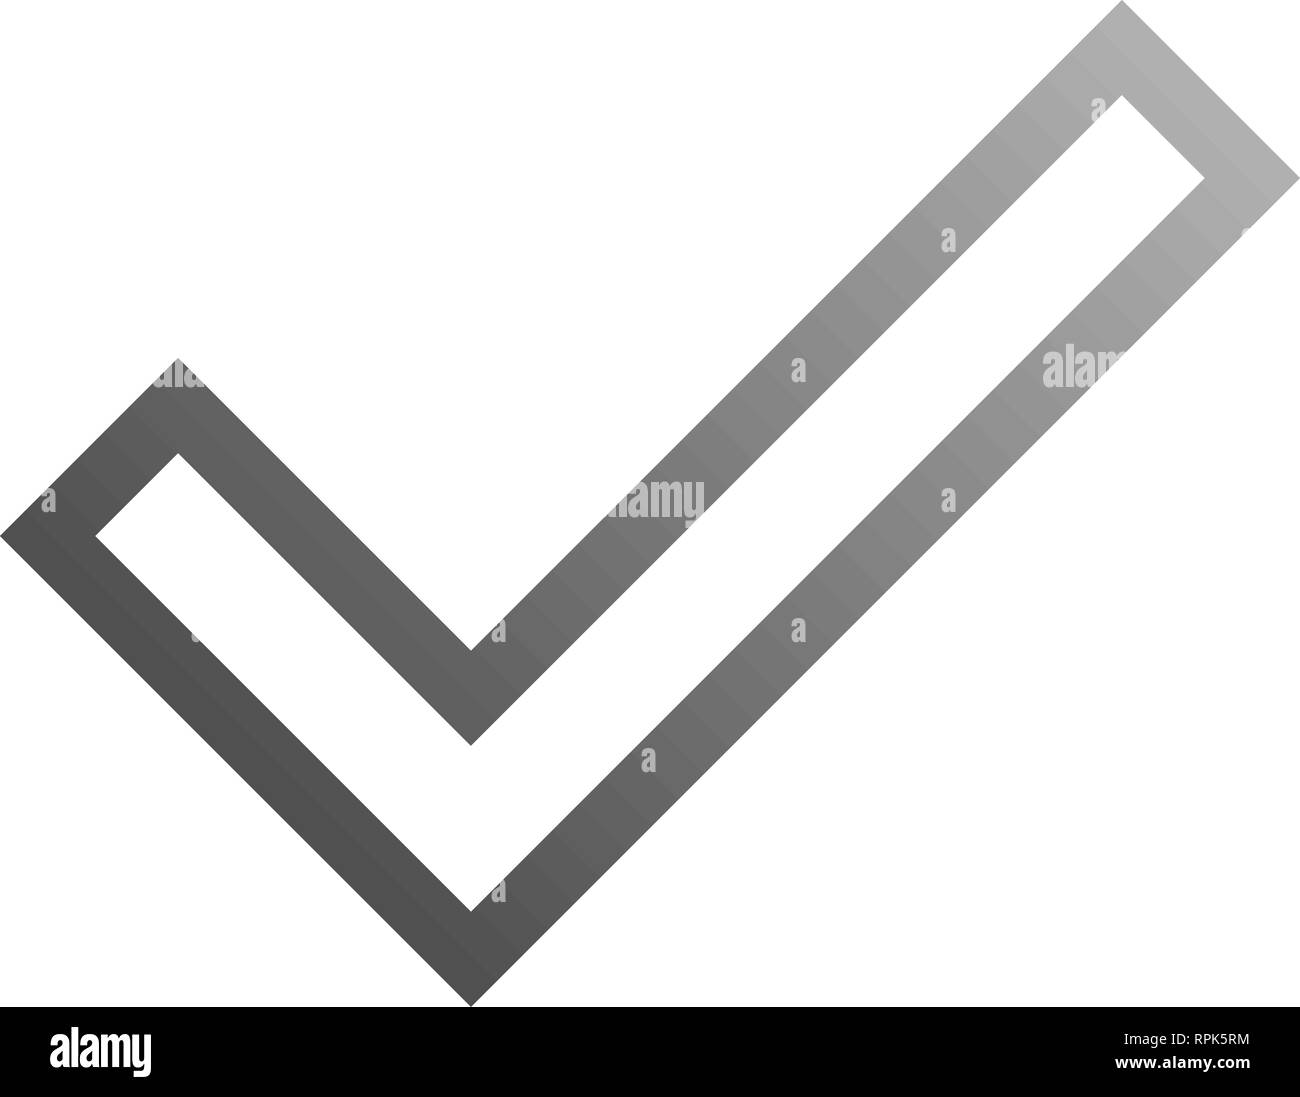 Häkchen-grauen Farbverlauf Umrisse Häkchensymbol-Vector Illustration Stock Vektor